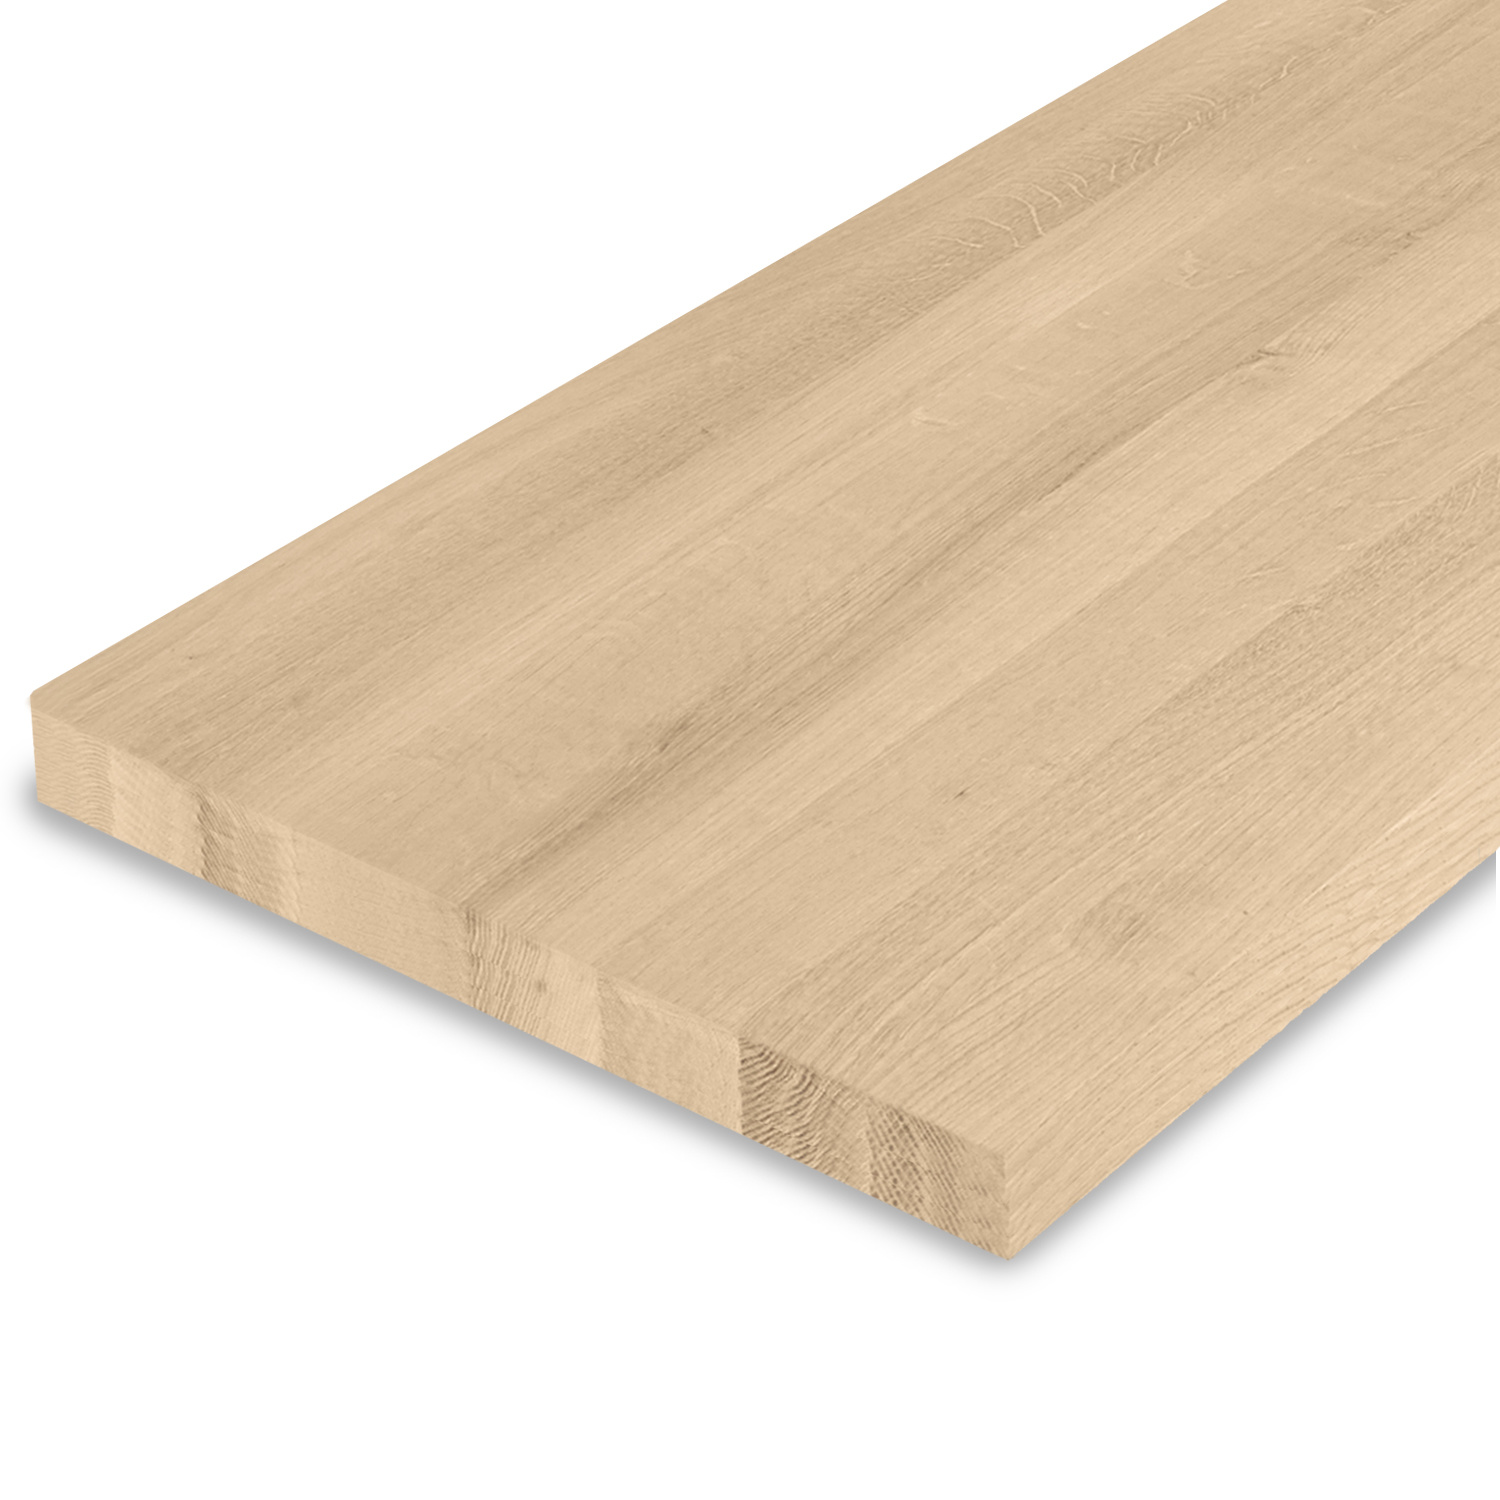  Leimholzplatte Eiche nach Maß - 4 cm dick - Eichenholz A-Qualität- Eiche Massivholzplatte - verleimt & künstlich getrocknet (HF 8-12%) - 15-120x20-300 cm